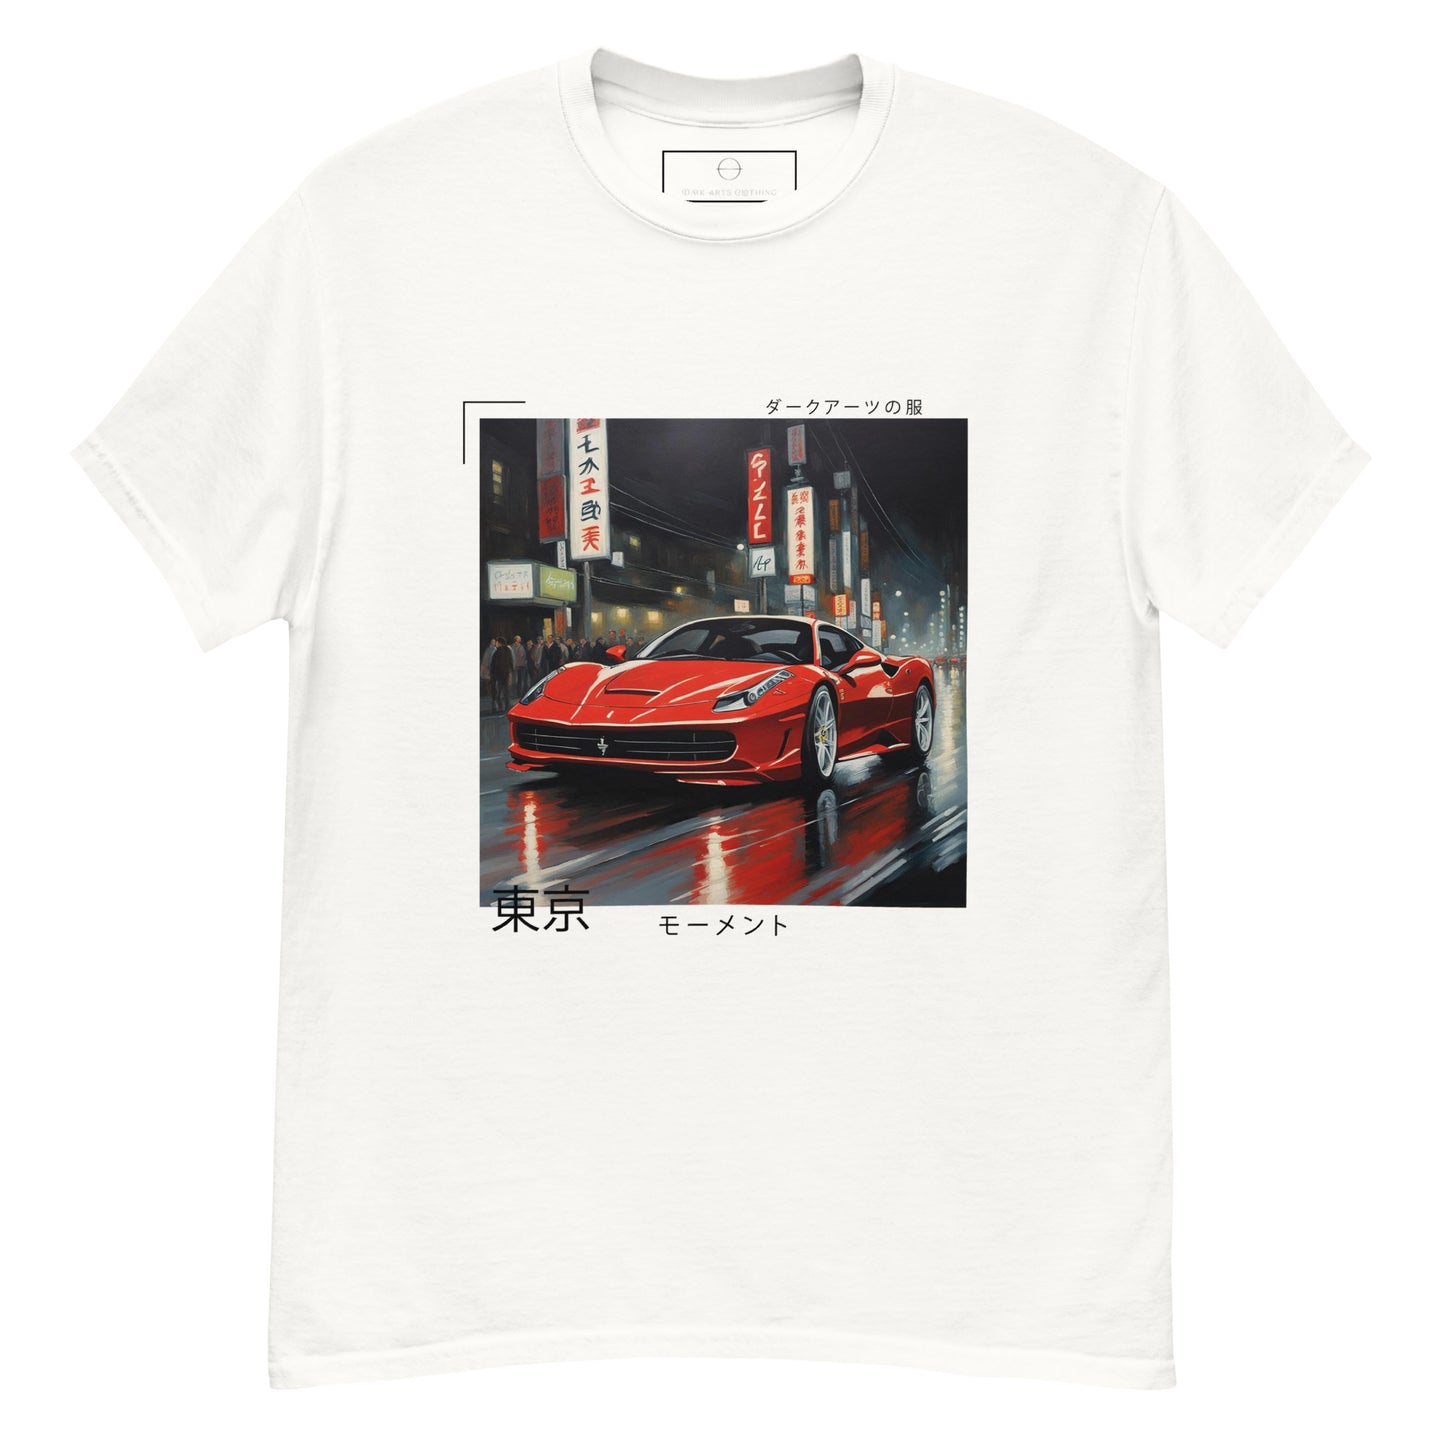 Tokyo Drift XII - T Shirt